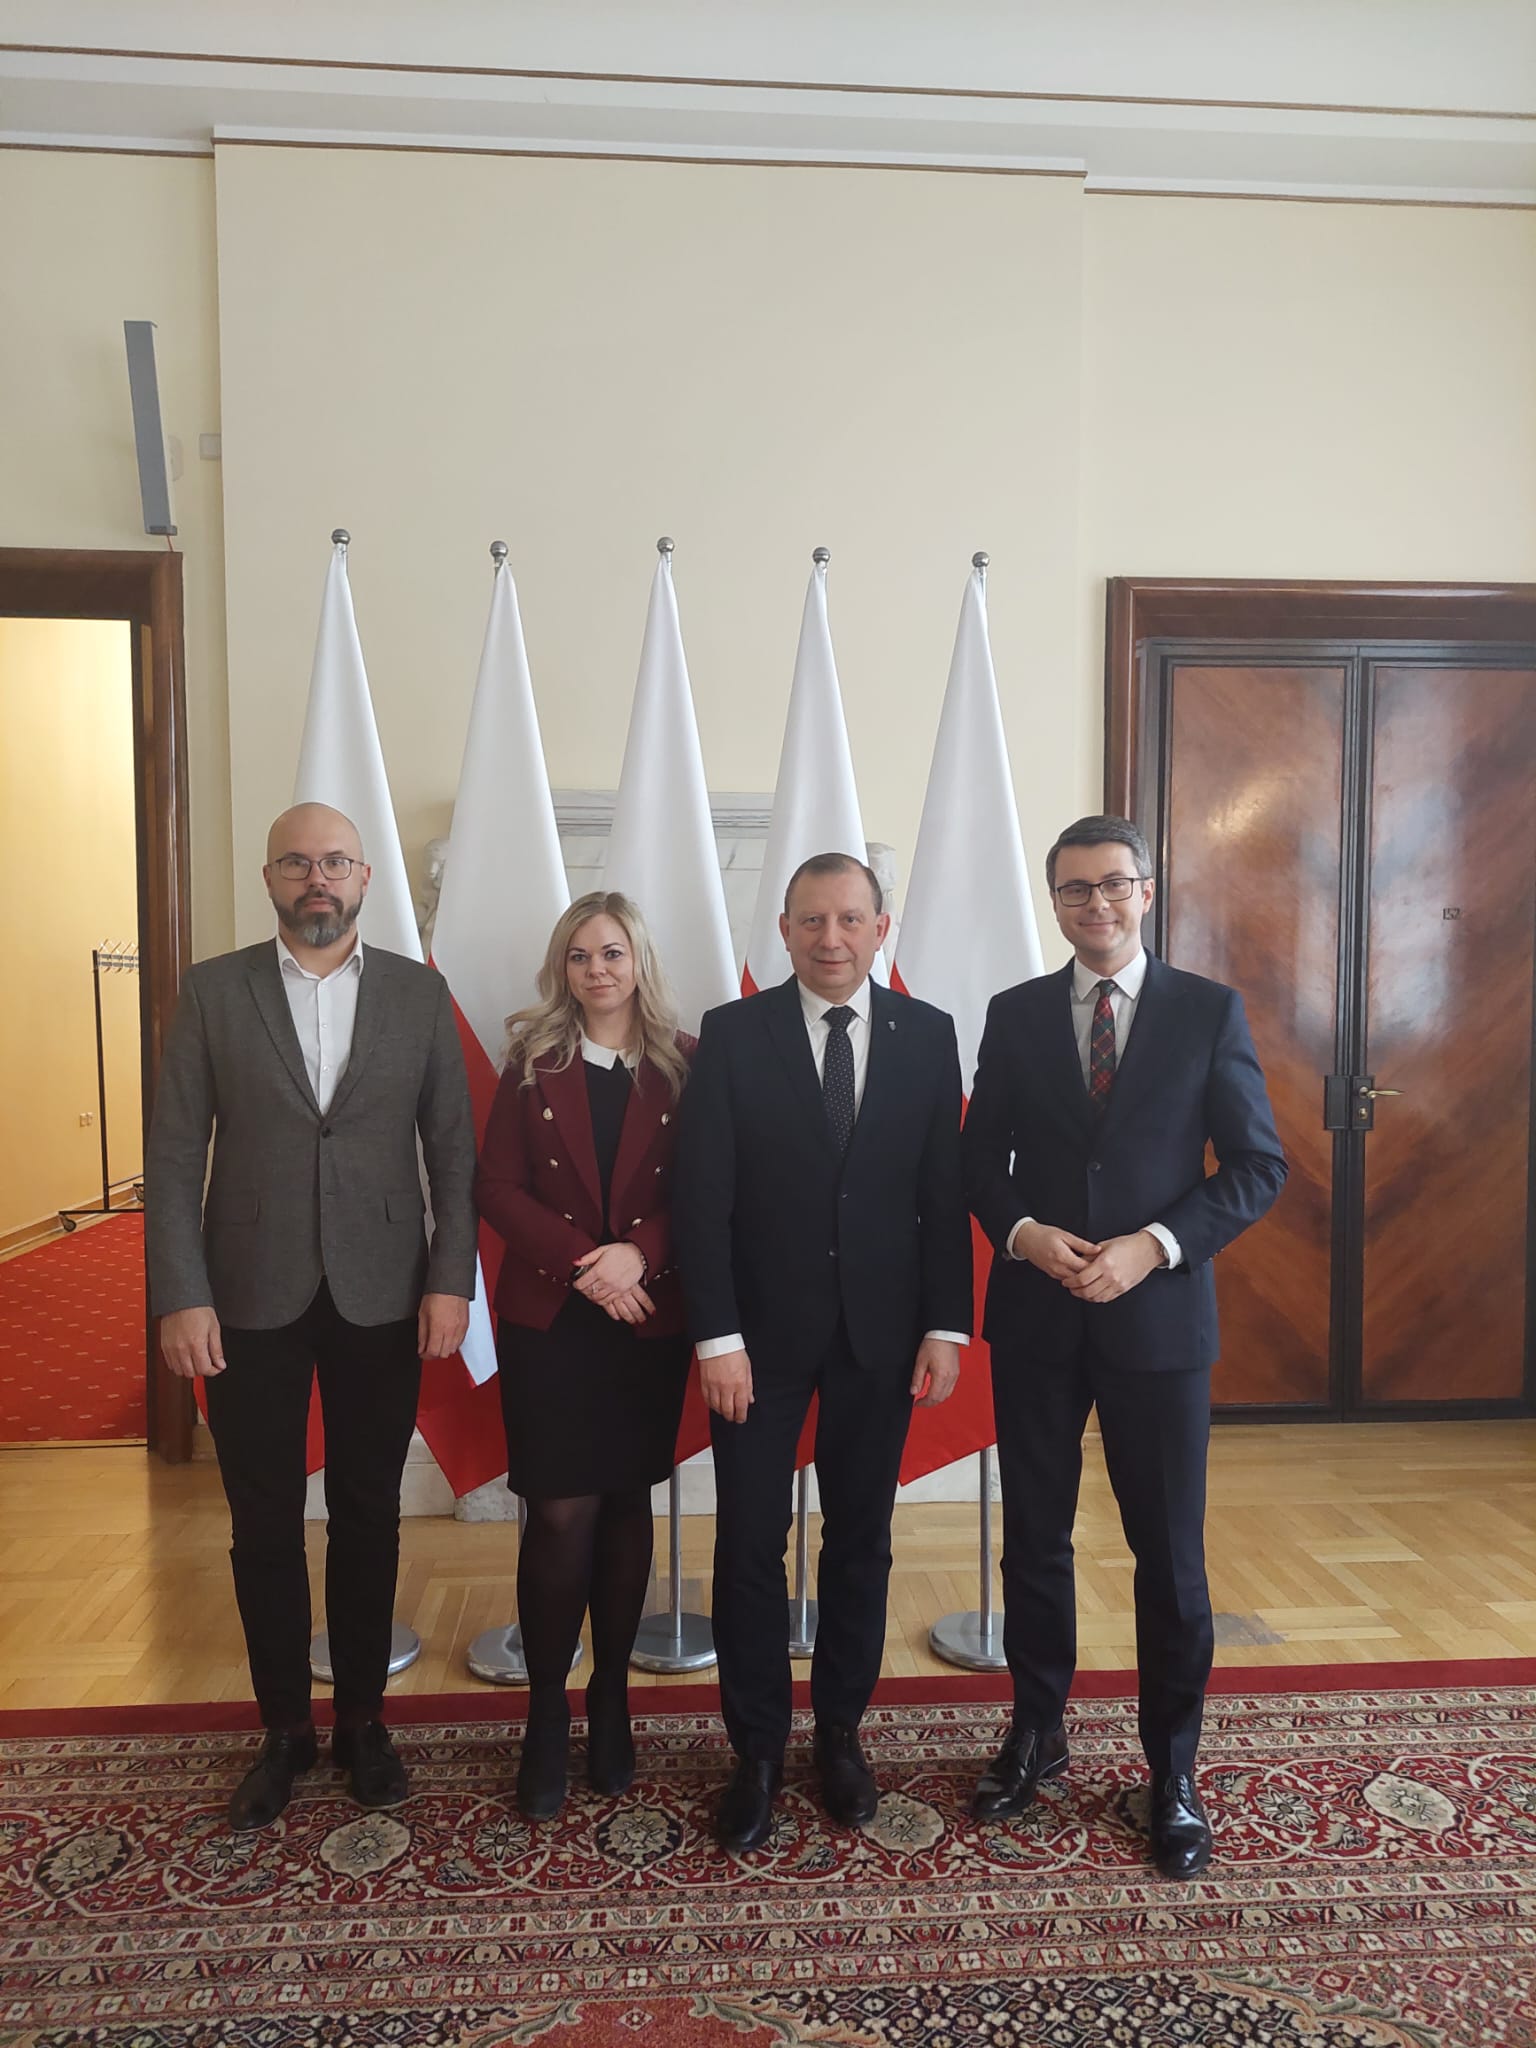 Burmistrz Jacek Maniszewski i wiceburmistrz Bartosz Gwoźdź Sproketowski Ustki odwiedzili posła Piotra Müllera we wtorek w Warszawie.